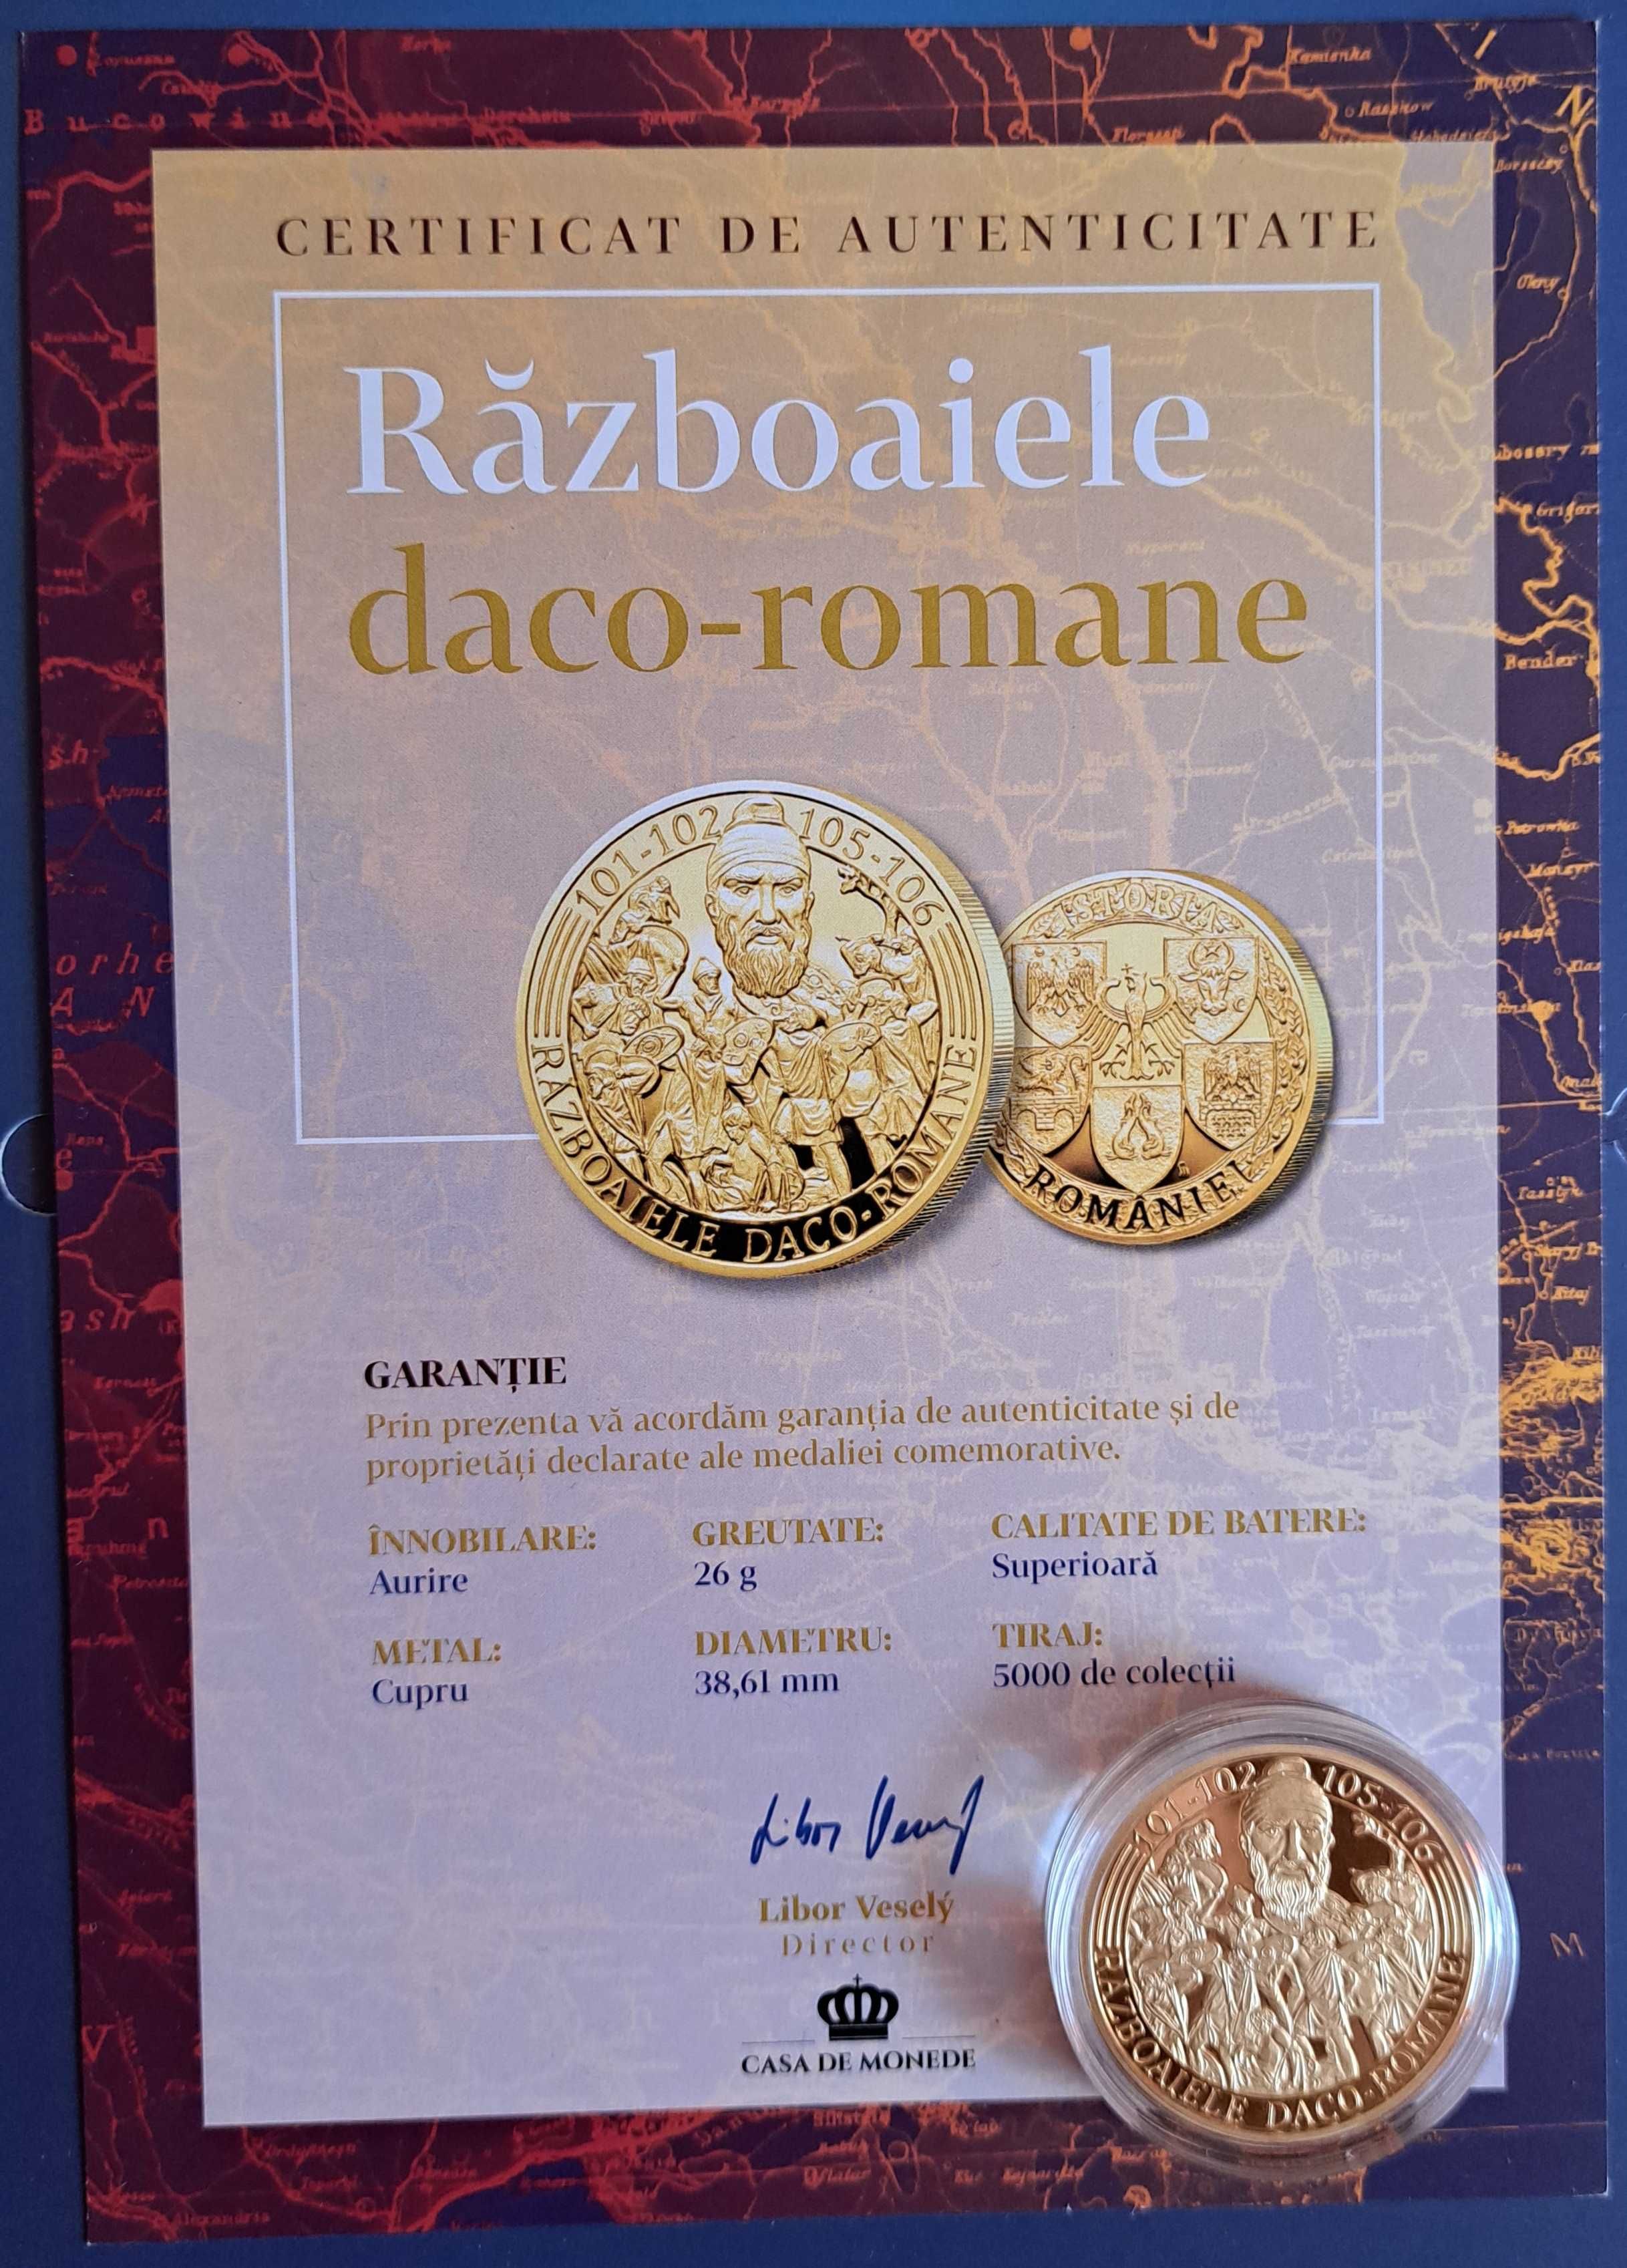 Vand 6 Monede din aur 999/1000,  si 16 medalii comemorative